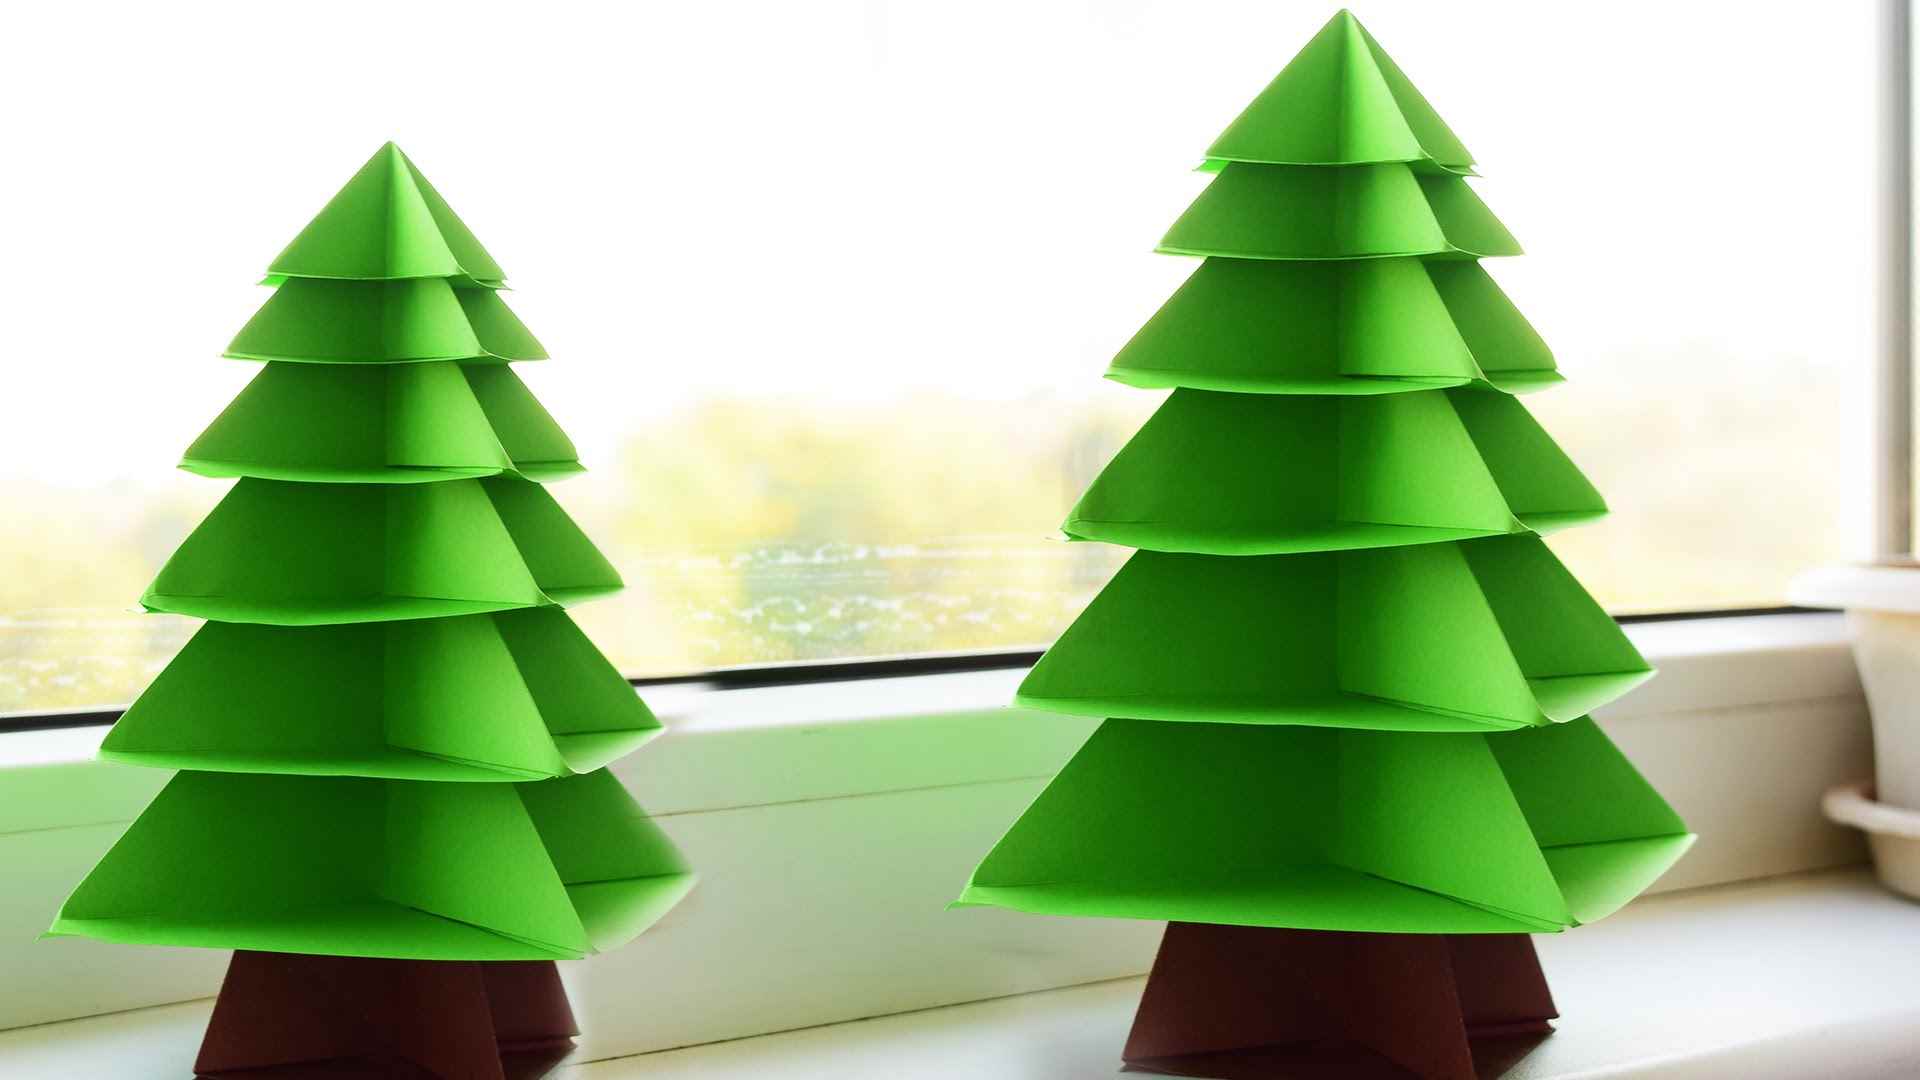 egy fényes csináld magad karton karácsonyfa készítésének gondolata